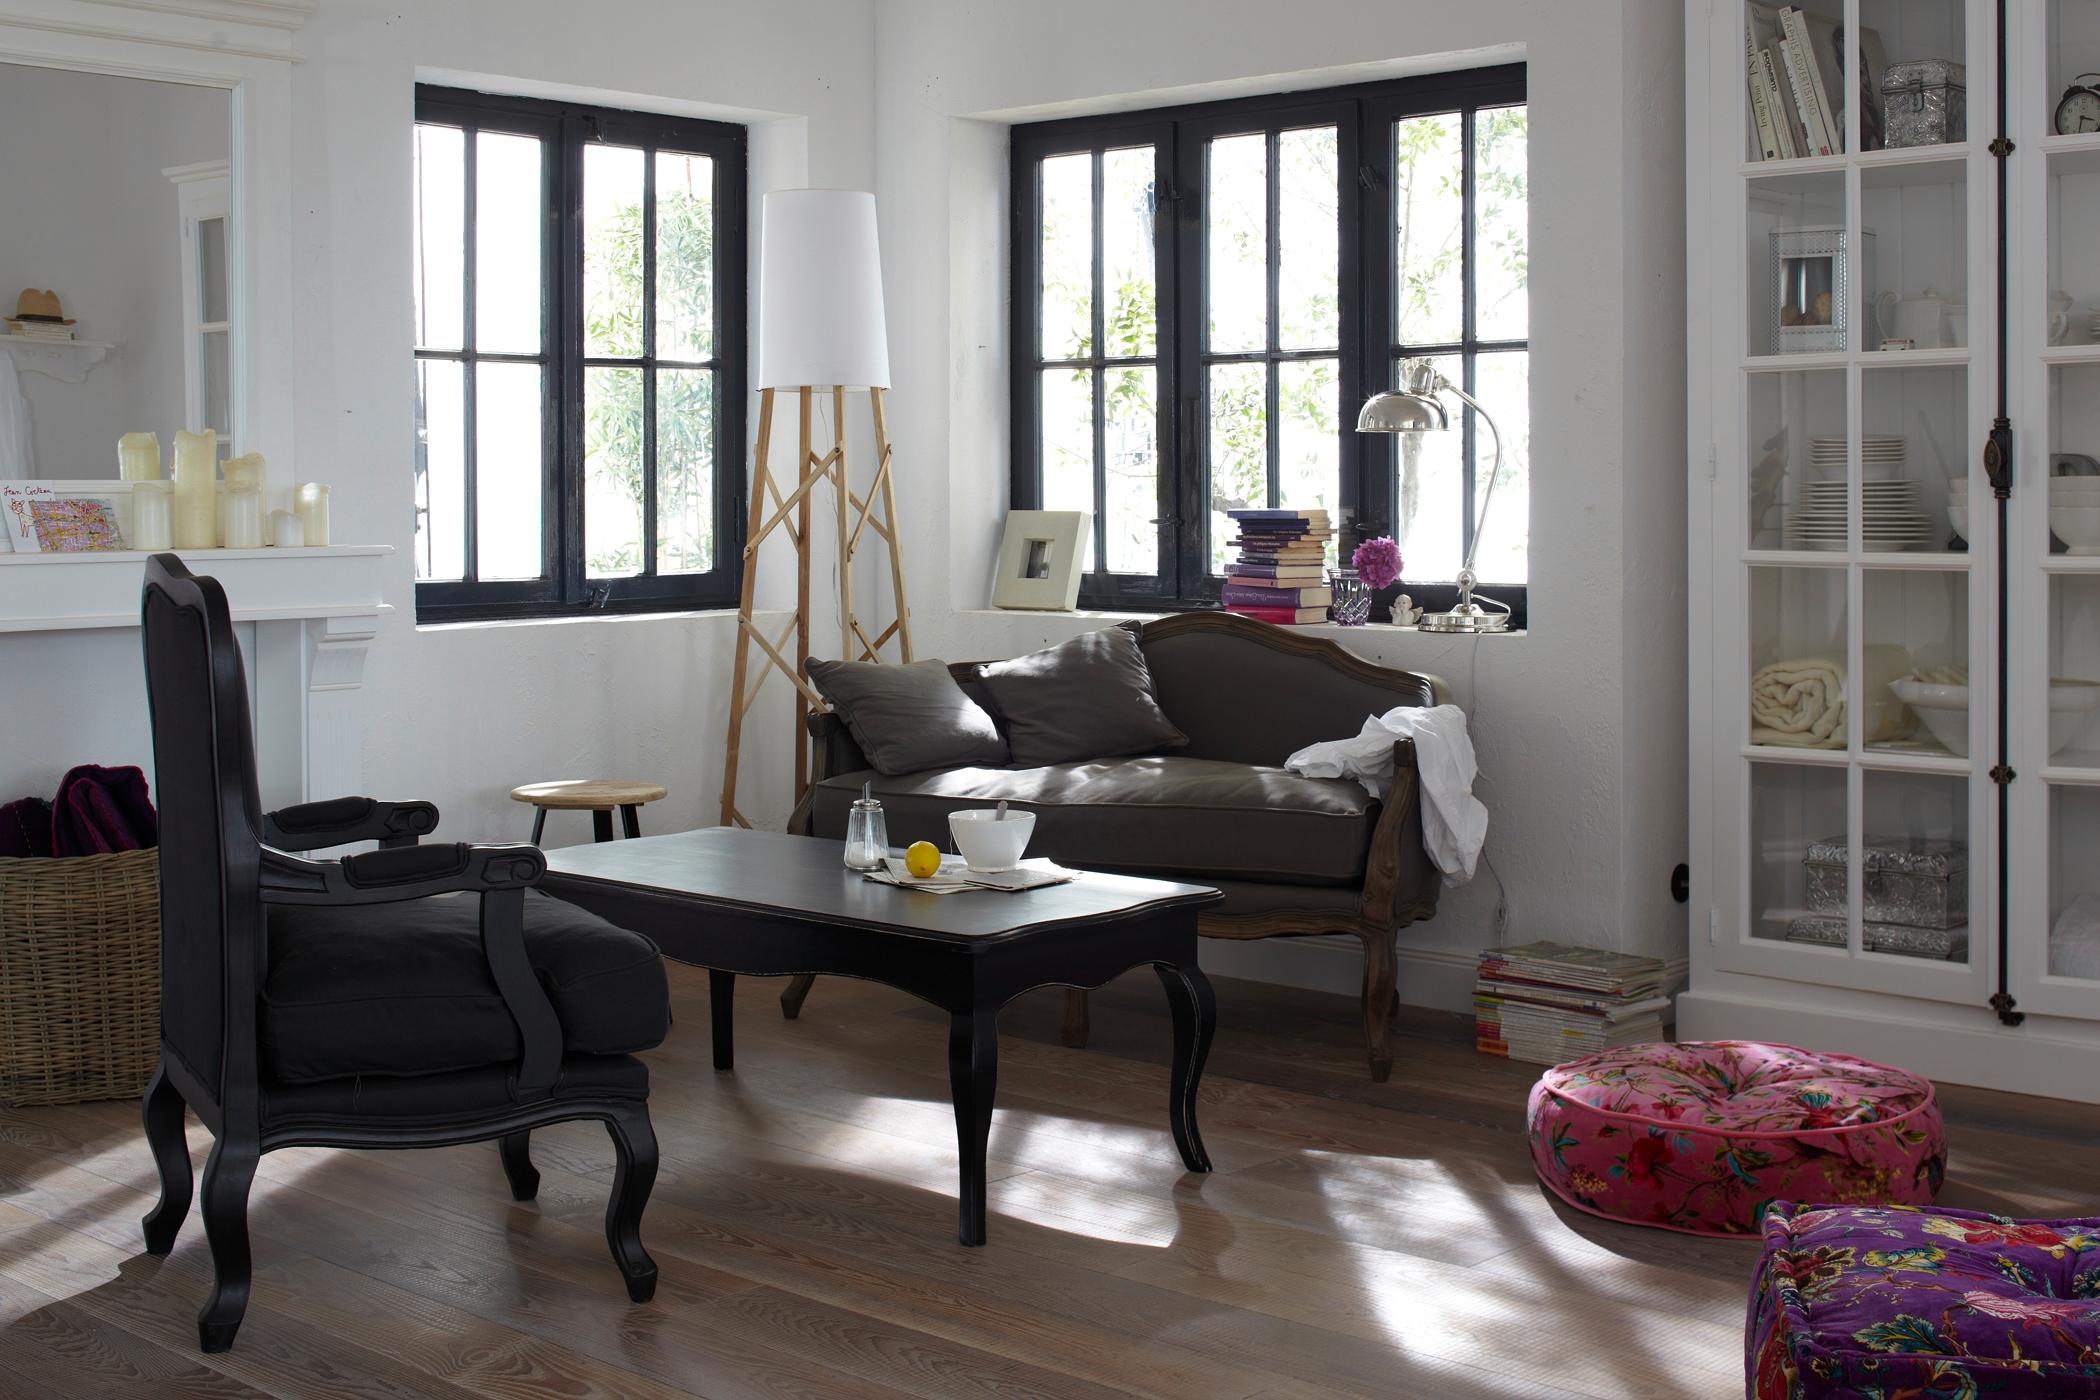 Klassische Wohnzimmermöbel #couchtisch #sessel #laminat #sofa #sitzkissen #sprossenfenster #wohnzimmerschrank ©Car Selbstbaumöbel